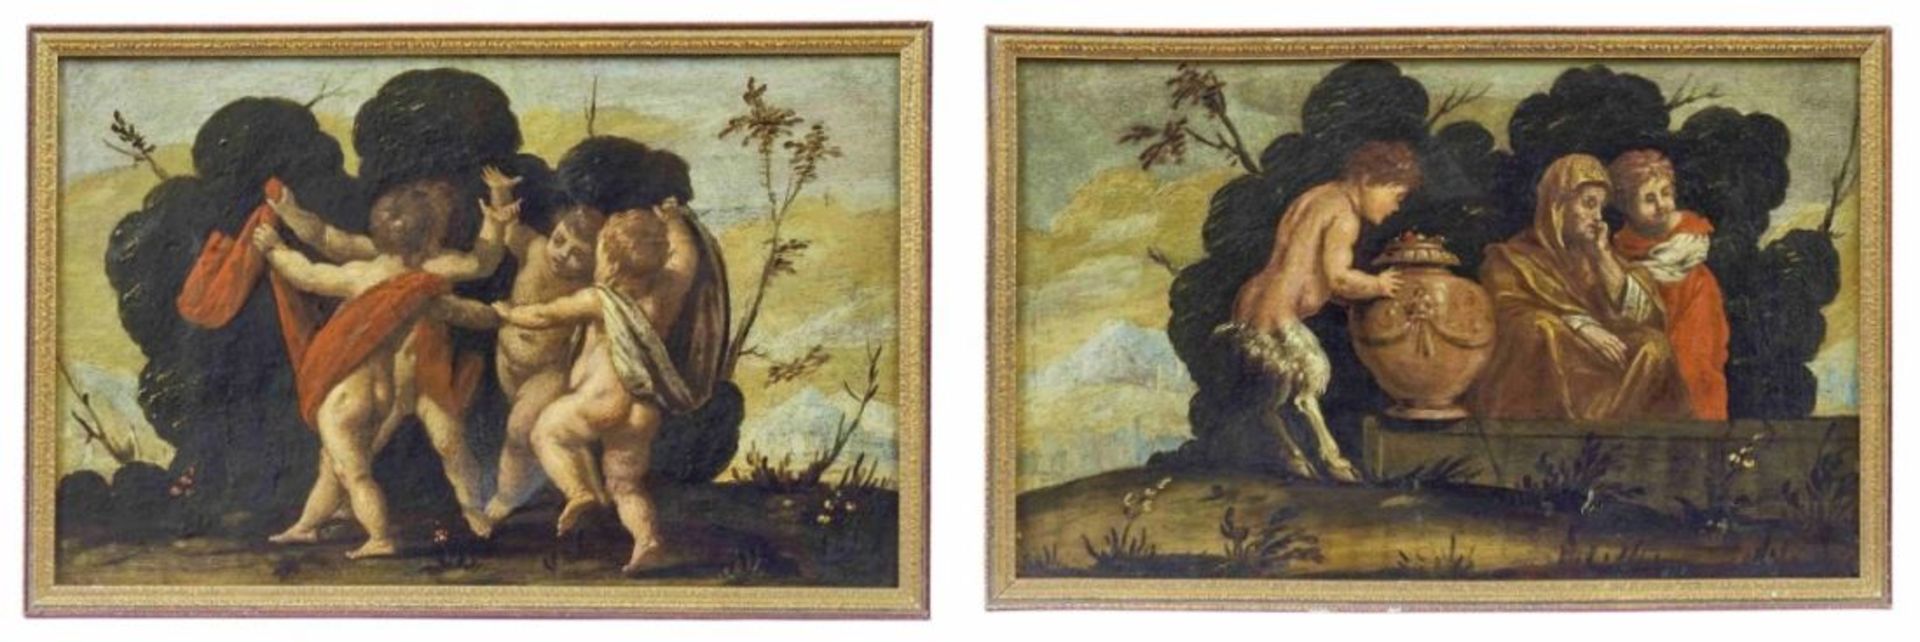 Zwei kleine, mythologische Darstellungen, Veneto, 2. H. 17. Jh. - Image 4 of 4